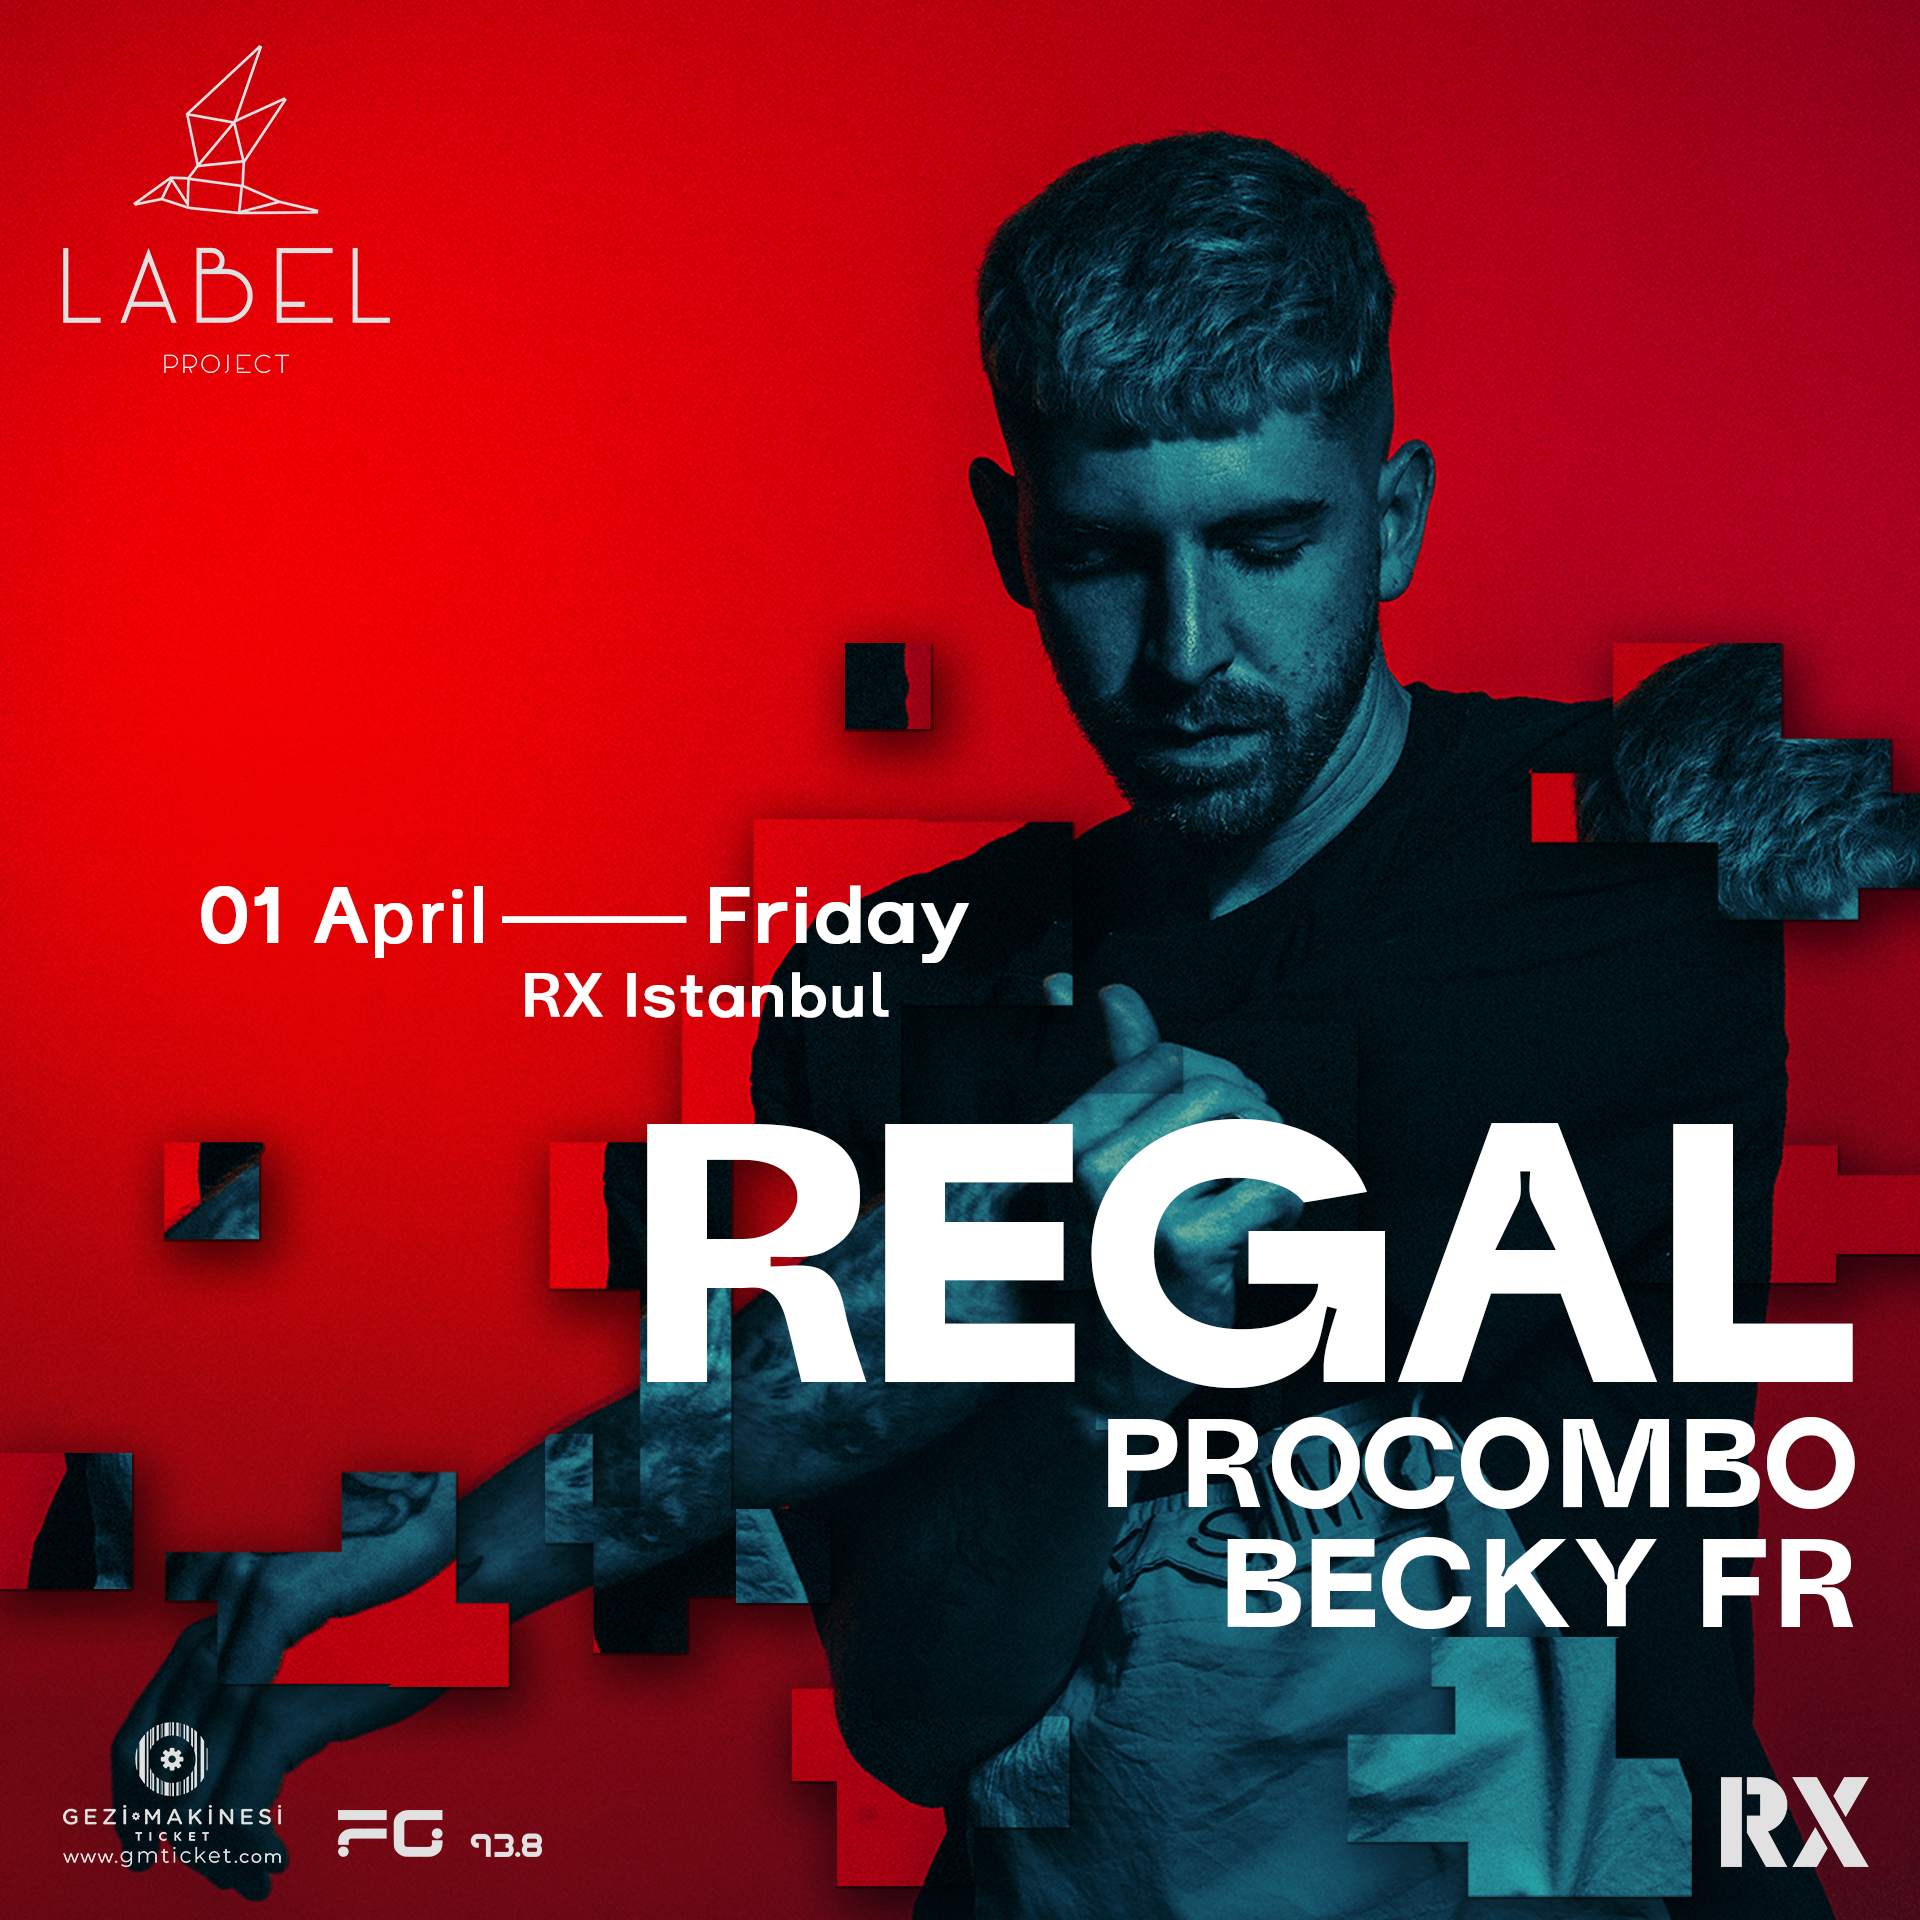 Label Project presents - Regal - Página frontal